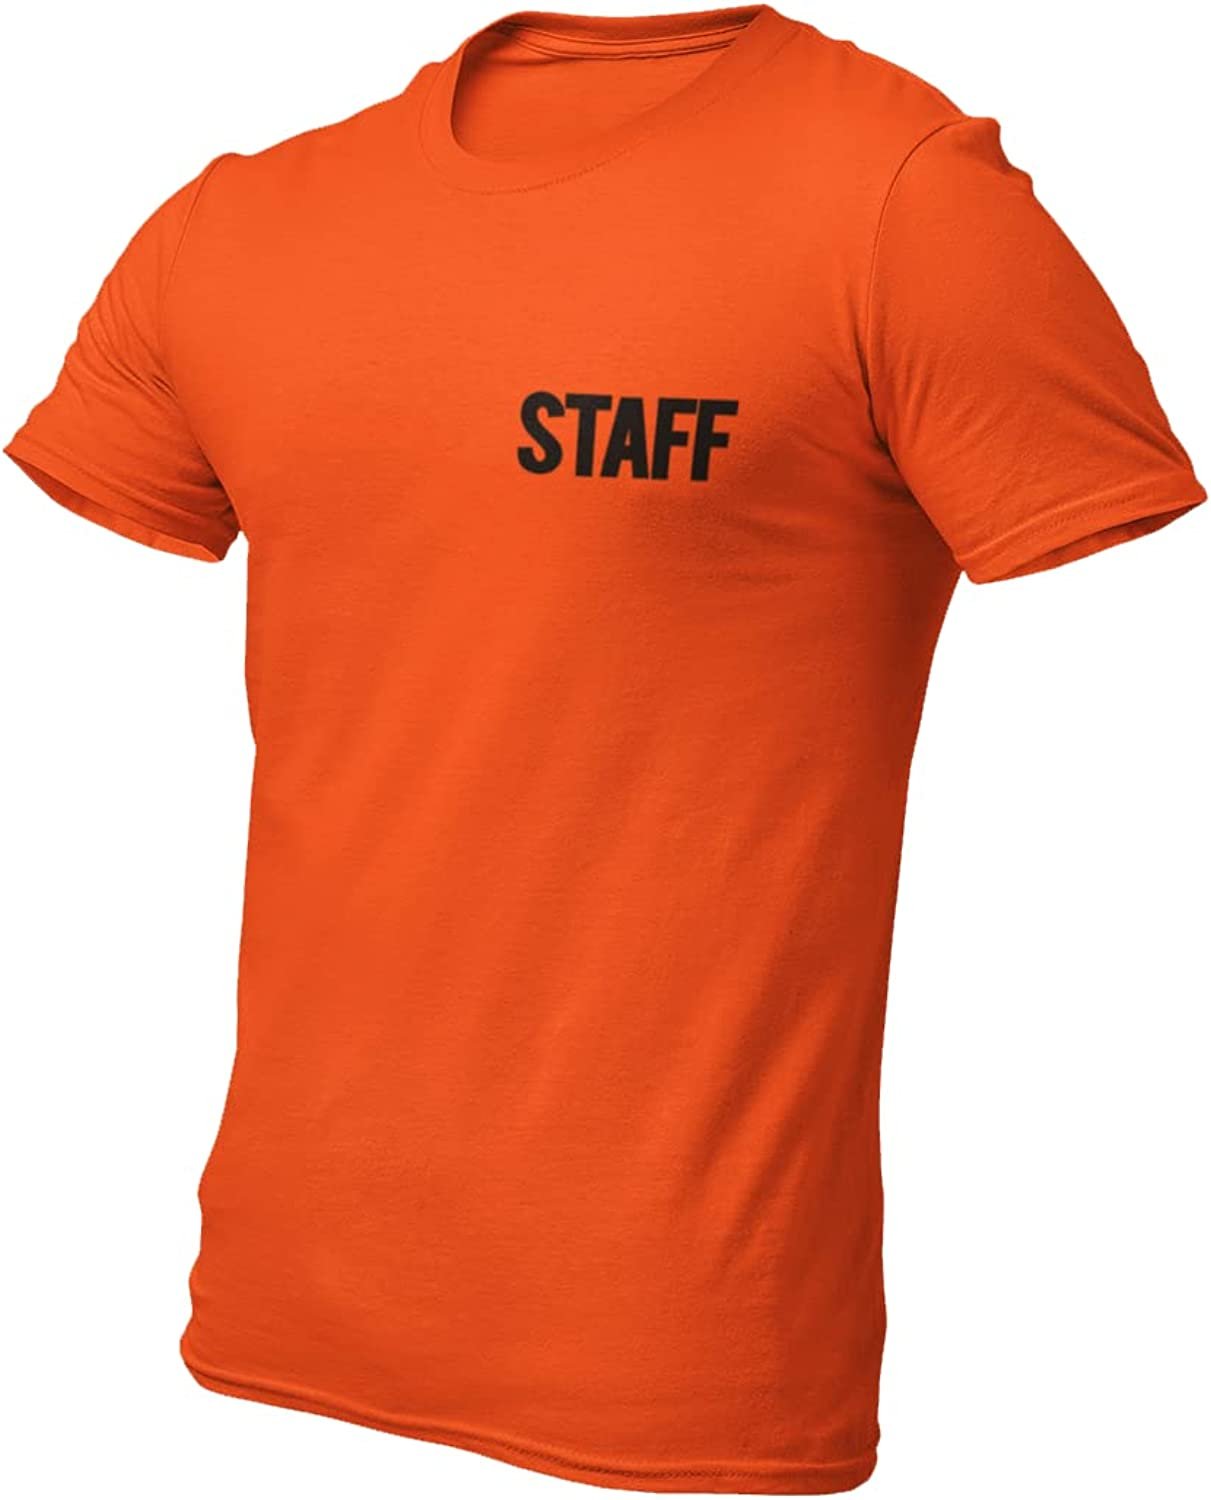 T-shirt sérigraphié Staff pour homme (imprimé poitrine et dos, orange)